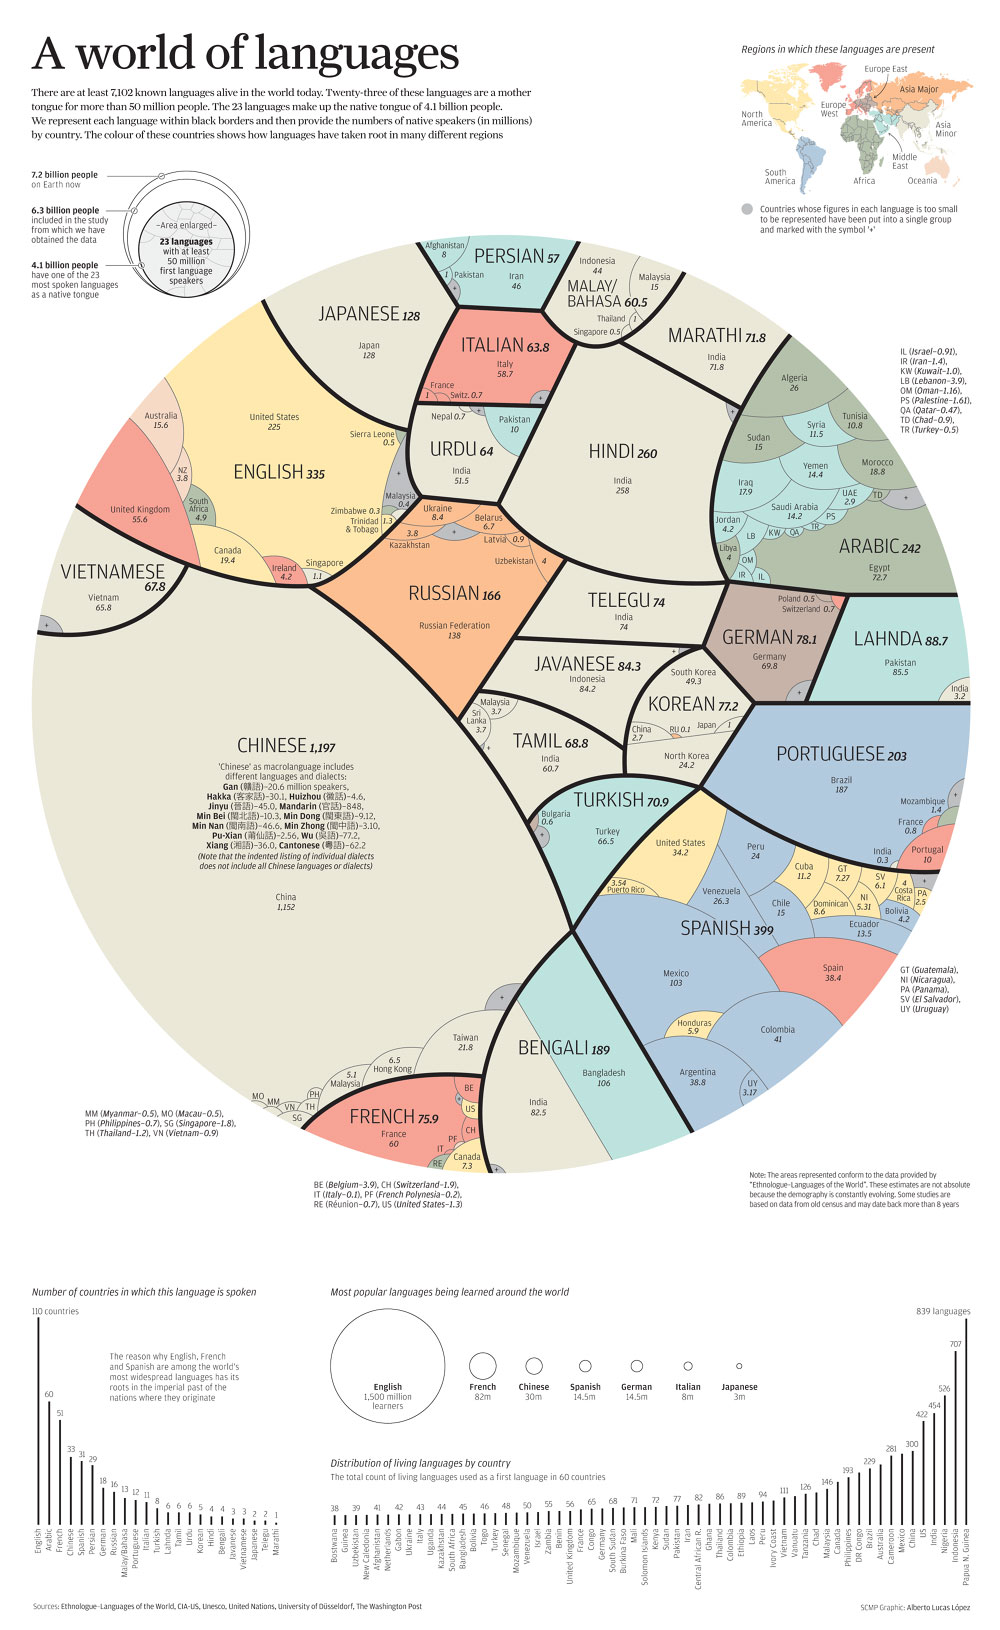 Quais as línguas mais traduzidas do mundo?